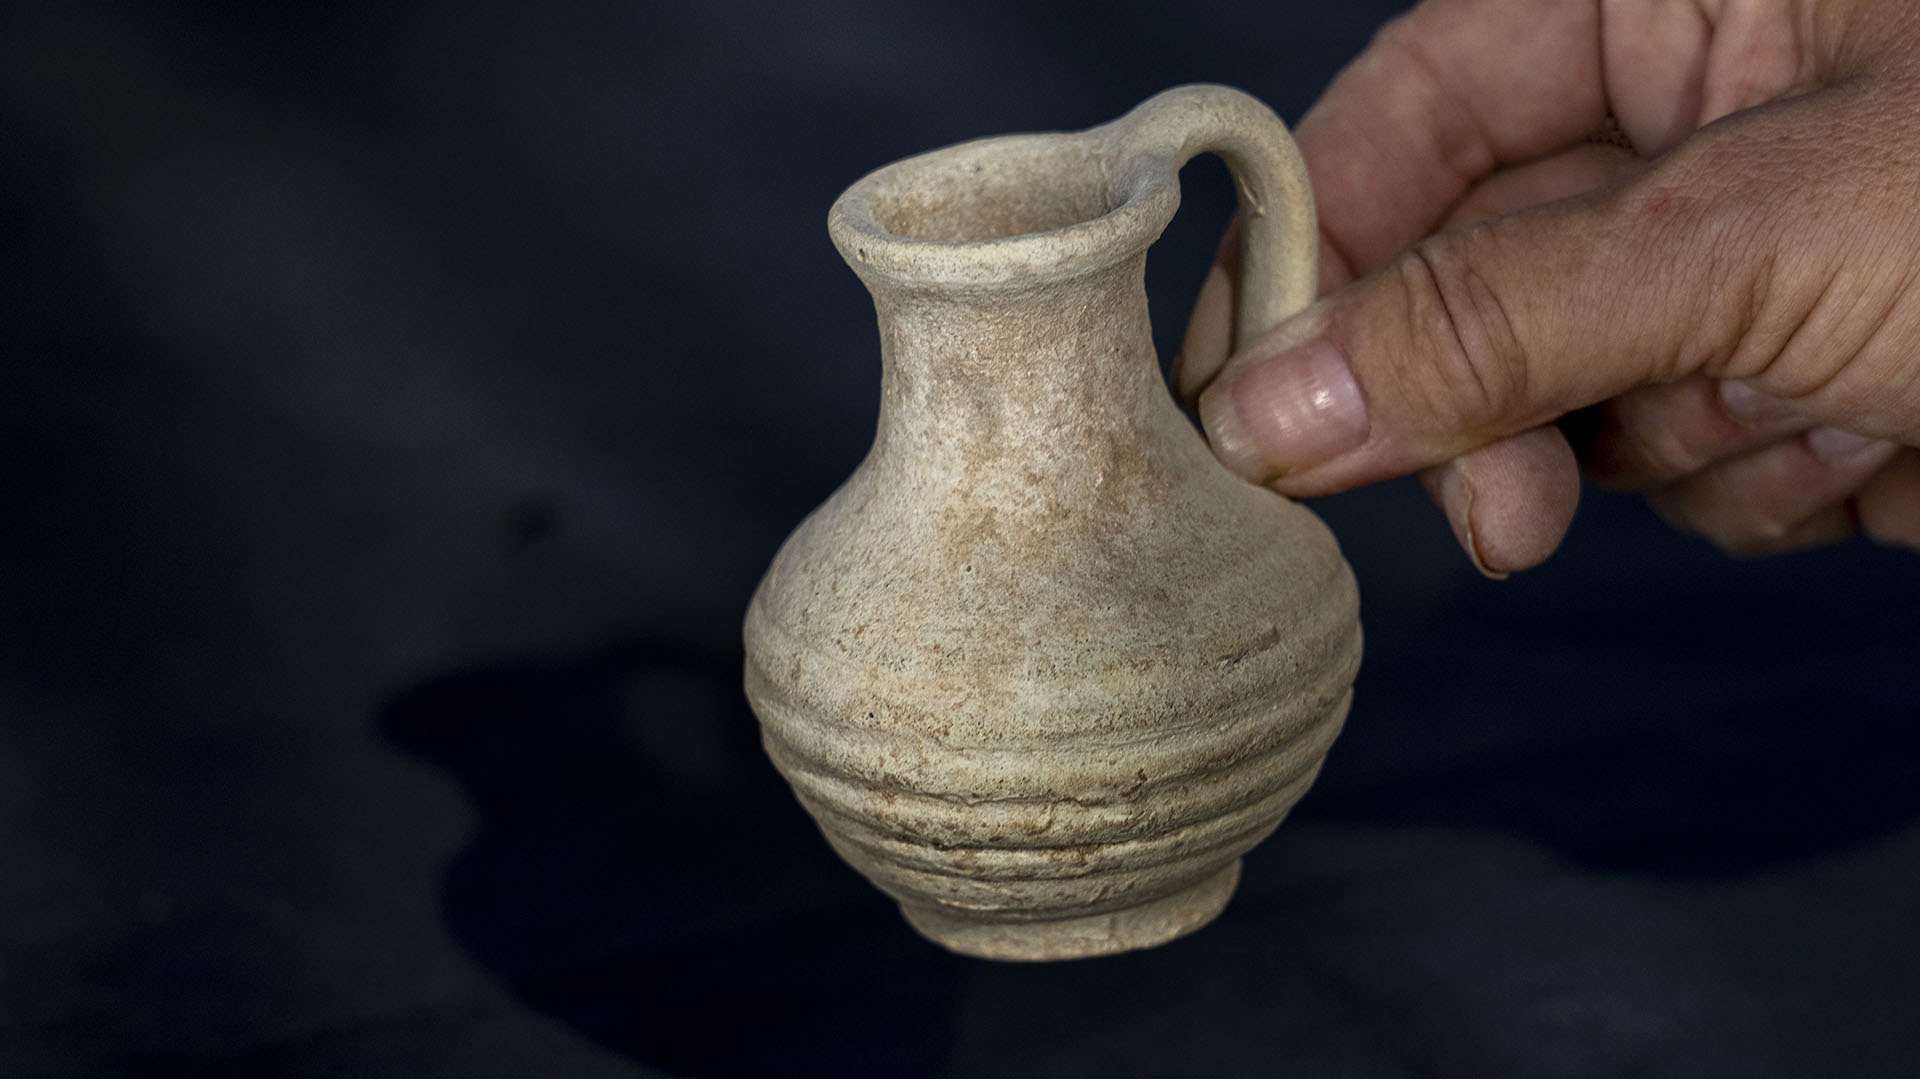 Un artefacto encontrado en la finca (Foto AP/Tsafrir Abayov)

